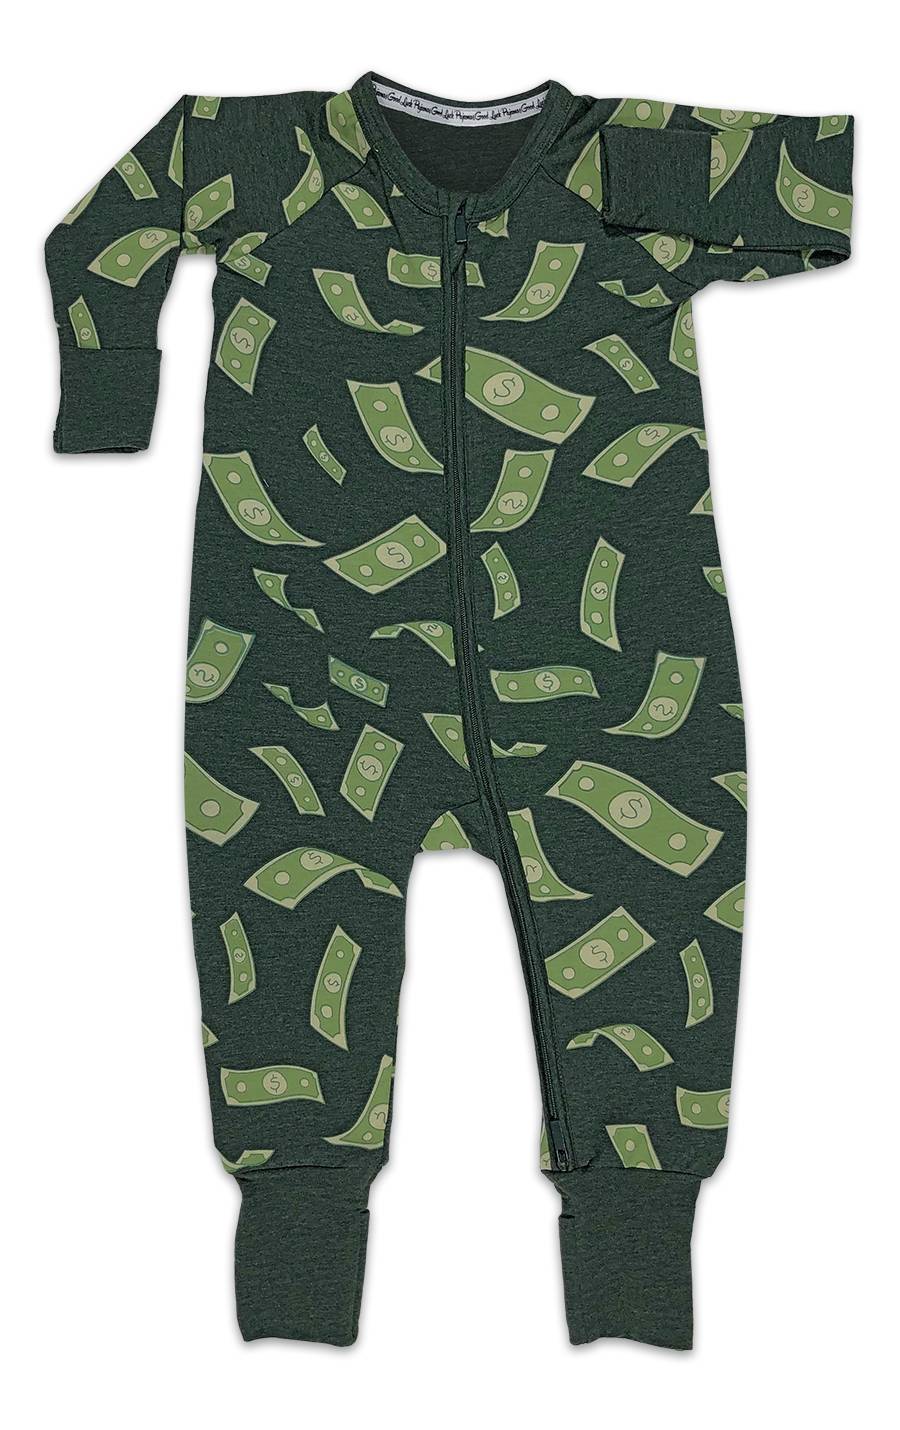 Money Baby Pajamas